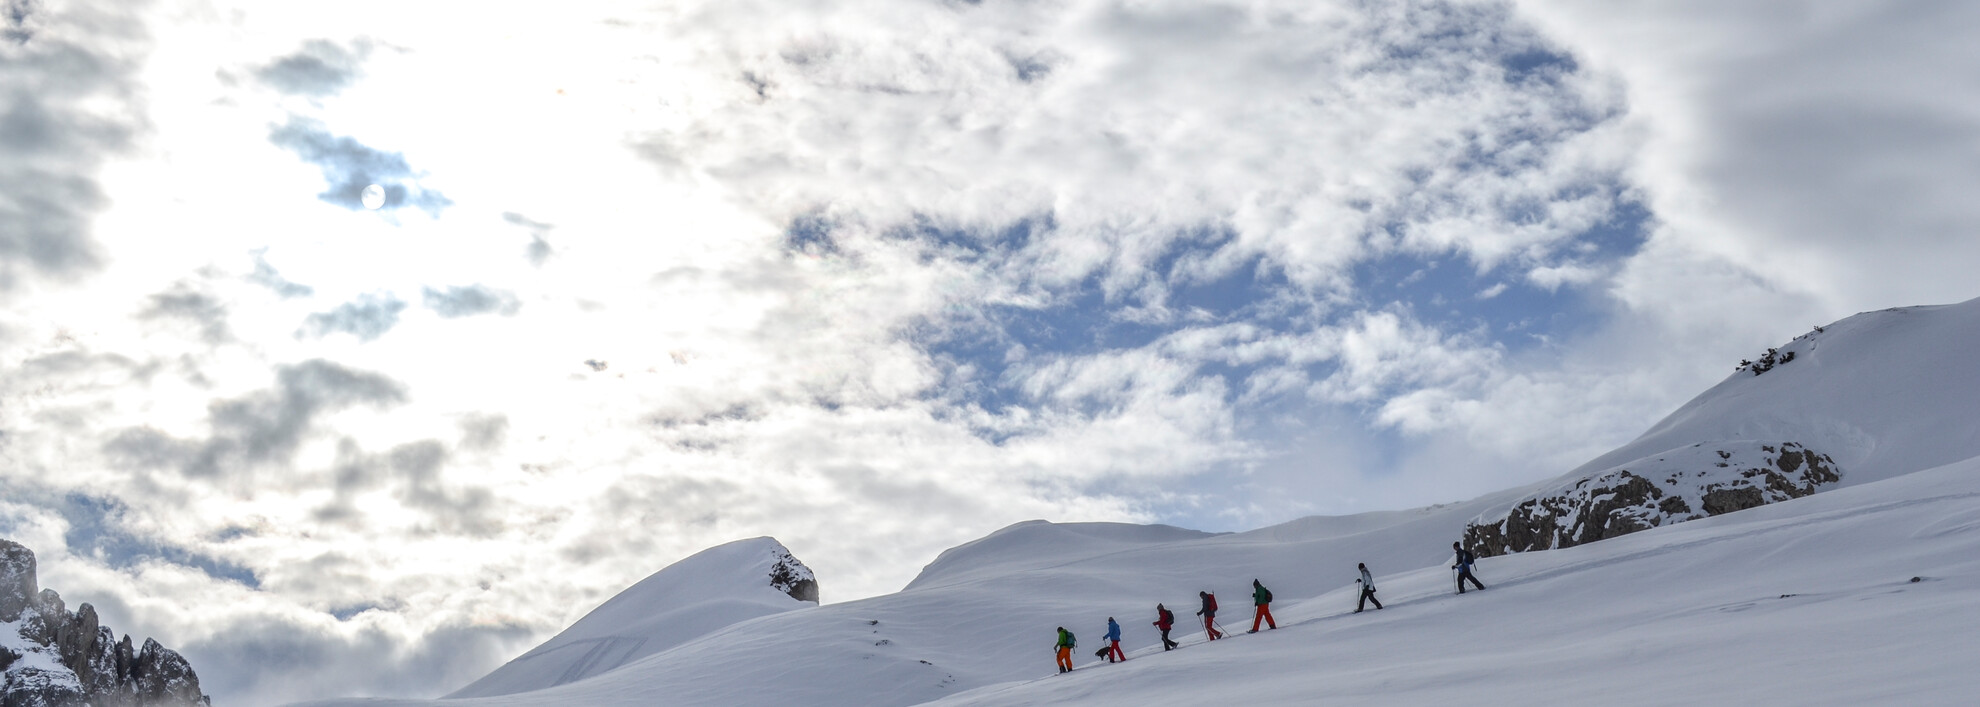 Schneeschuhwandern in den Schneedünen | © Kleinwalsertal Tourismus eGen